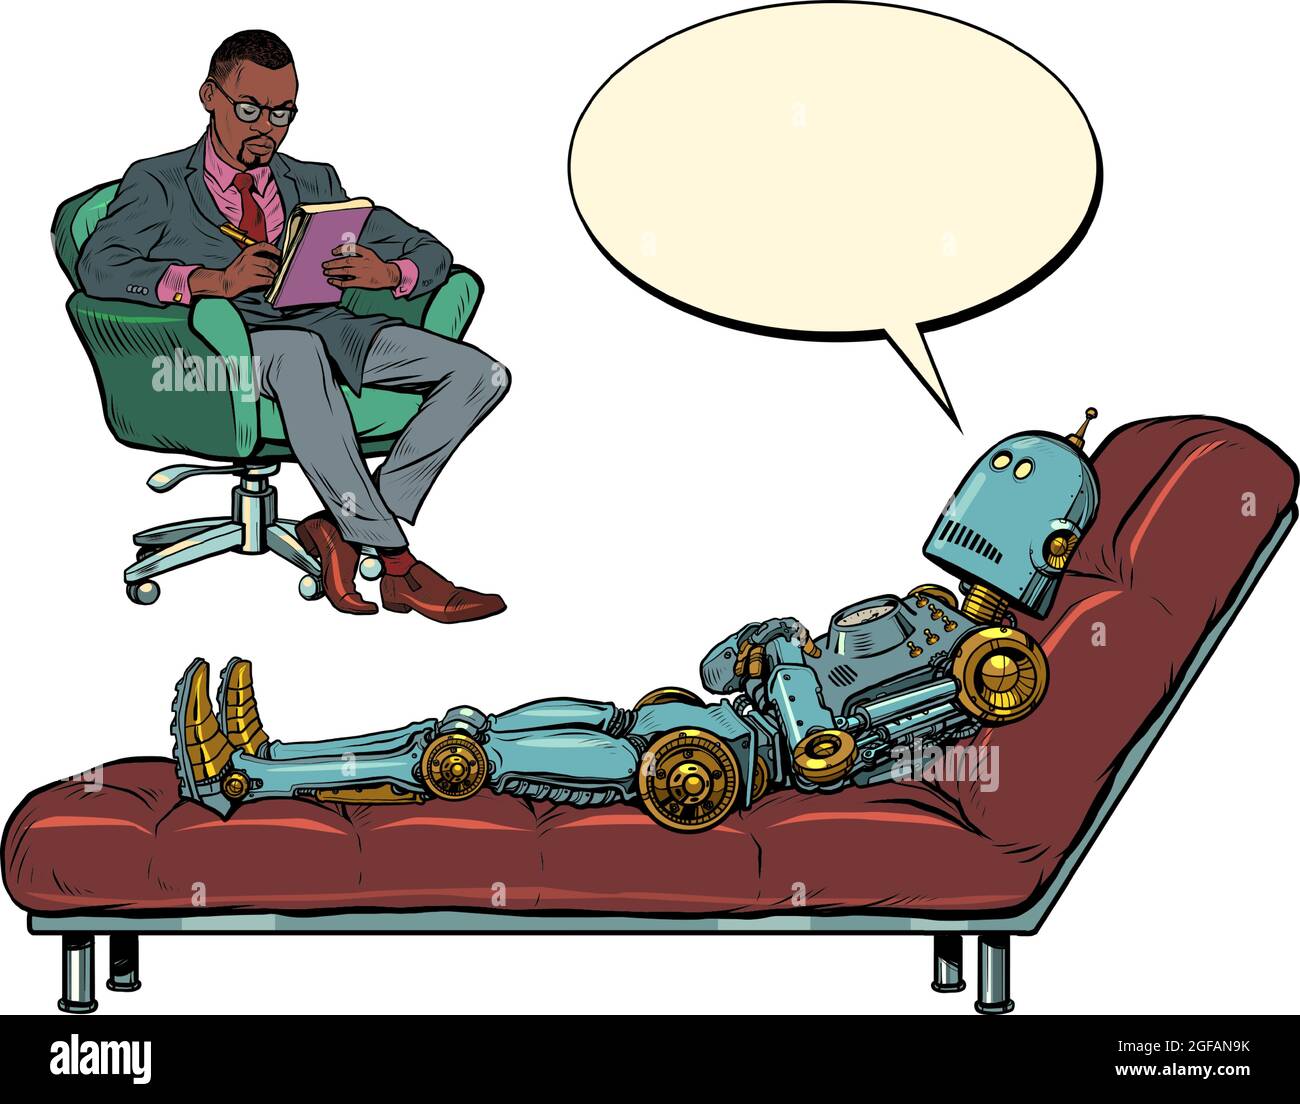 Un psychothérapeute masculin noir lors d'une séance de psychothérapie, écoute un robot patient, s'assoit dans une chaise et prend des notes dans un carnet Illustration de Vecteur